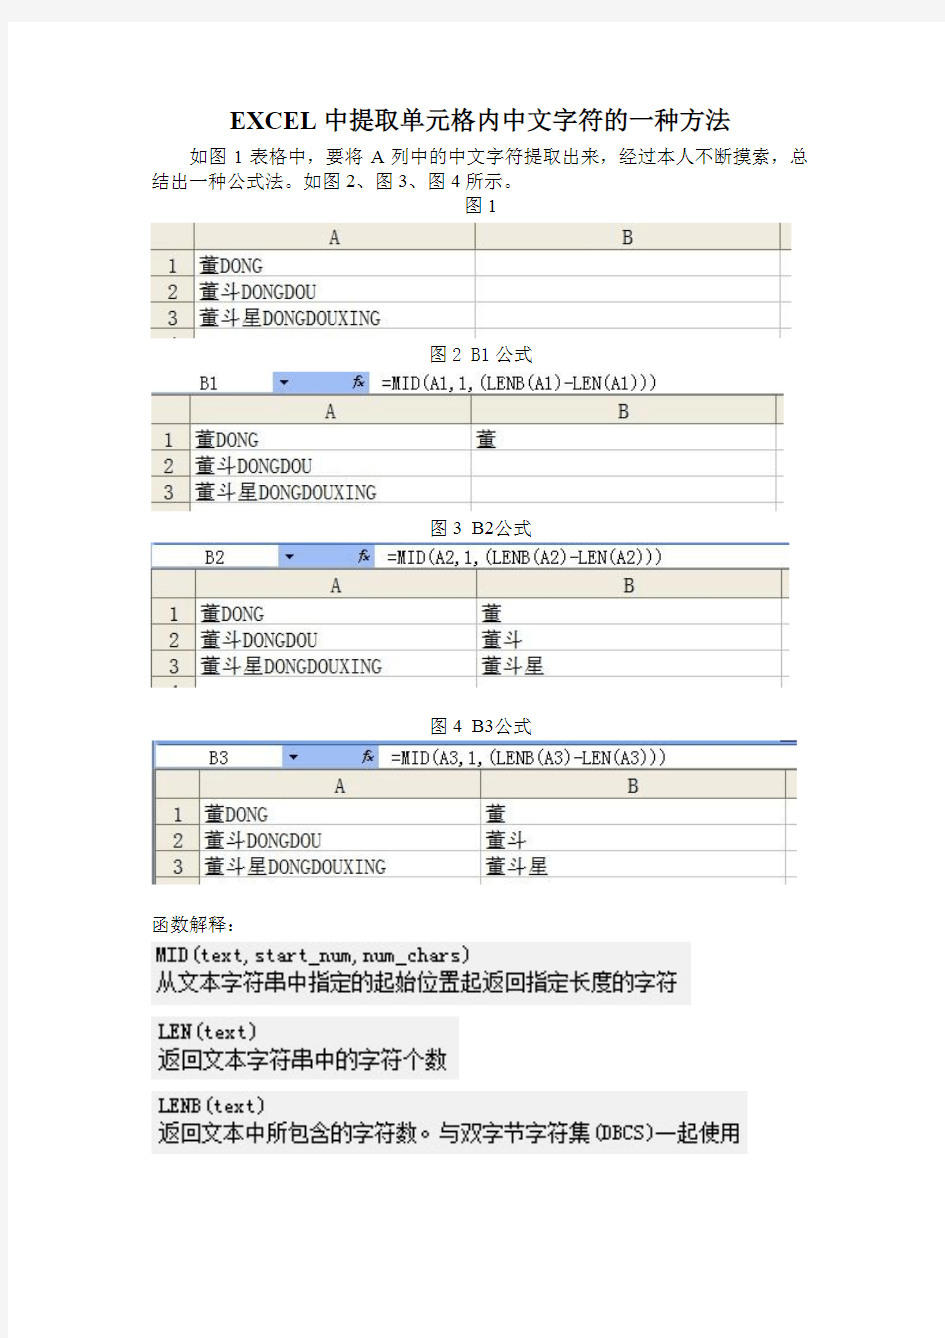 EXCEL中提取单元格内中文字符的一种方法